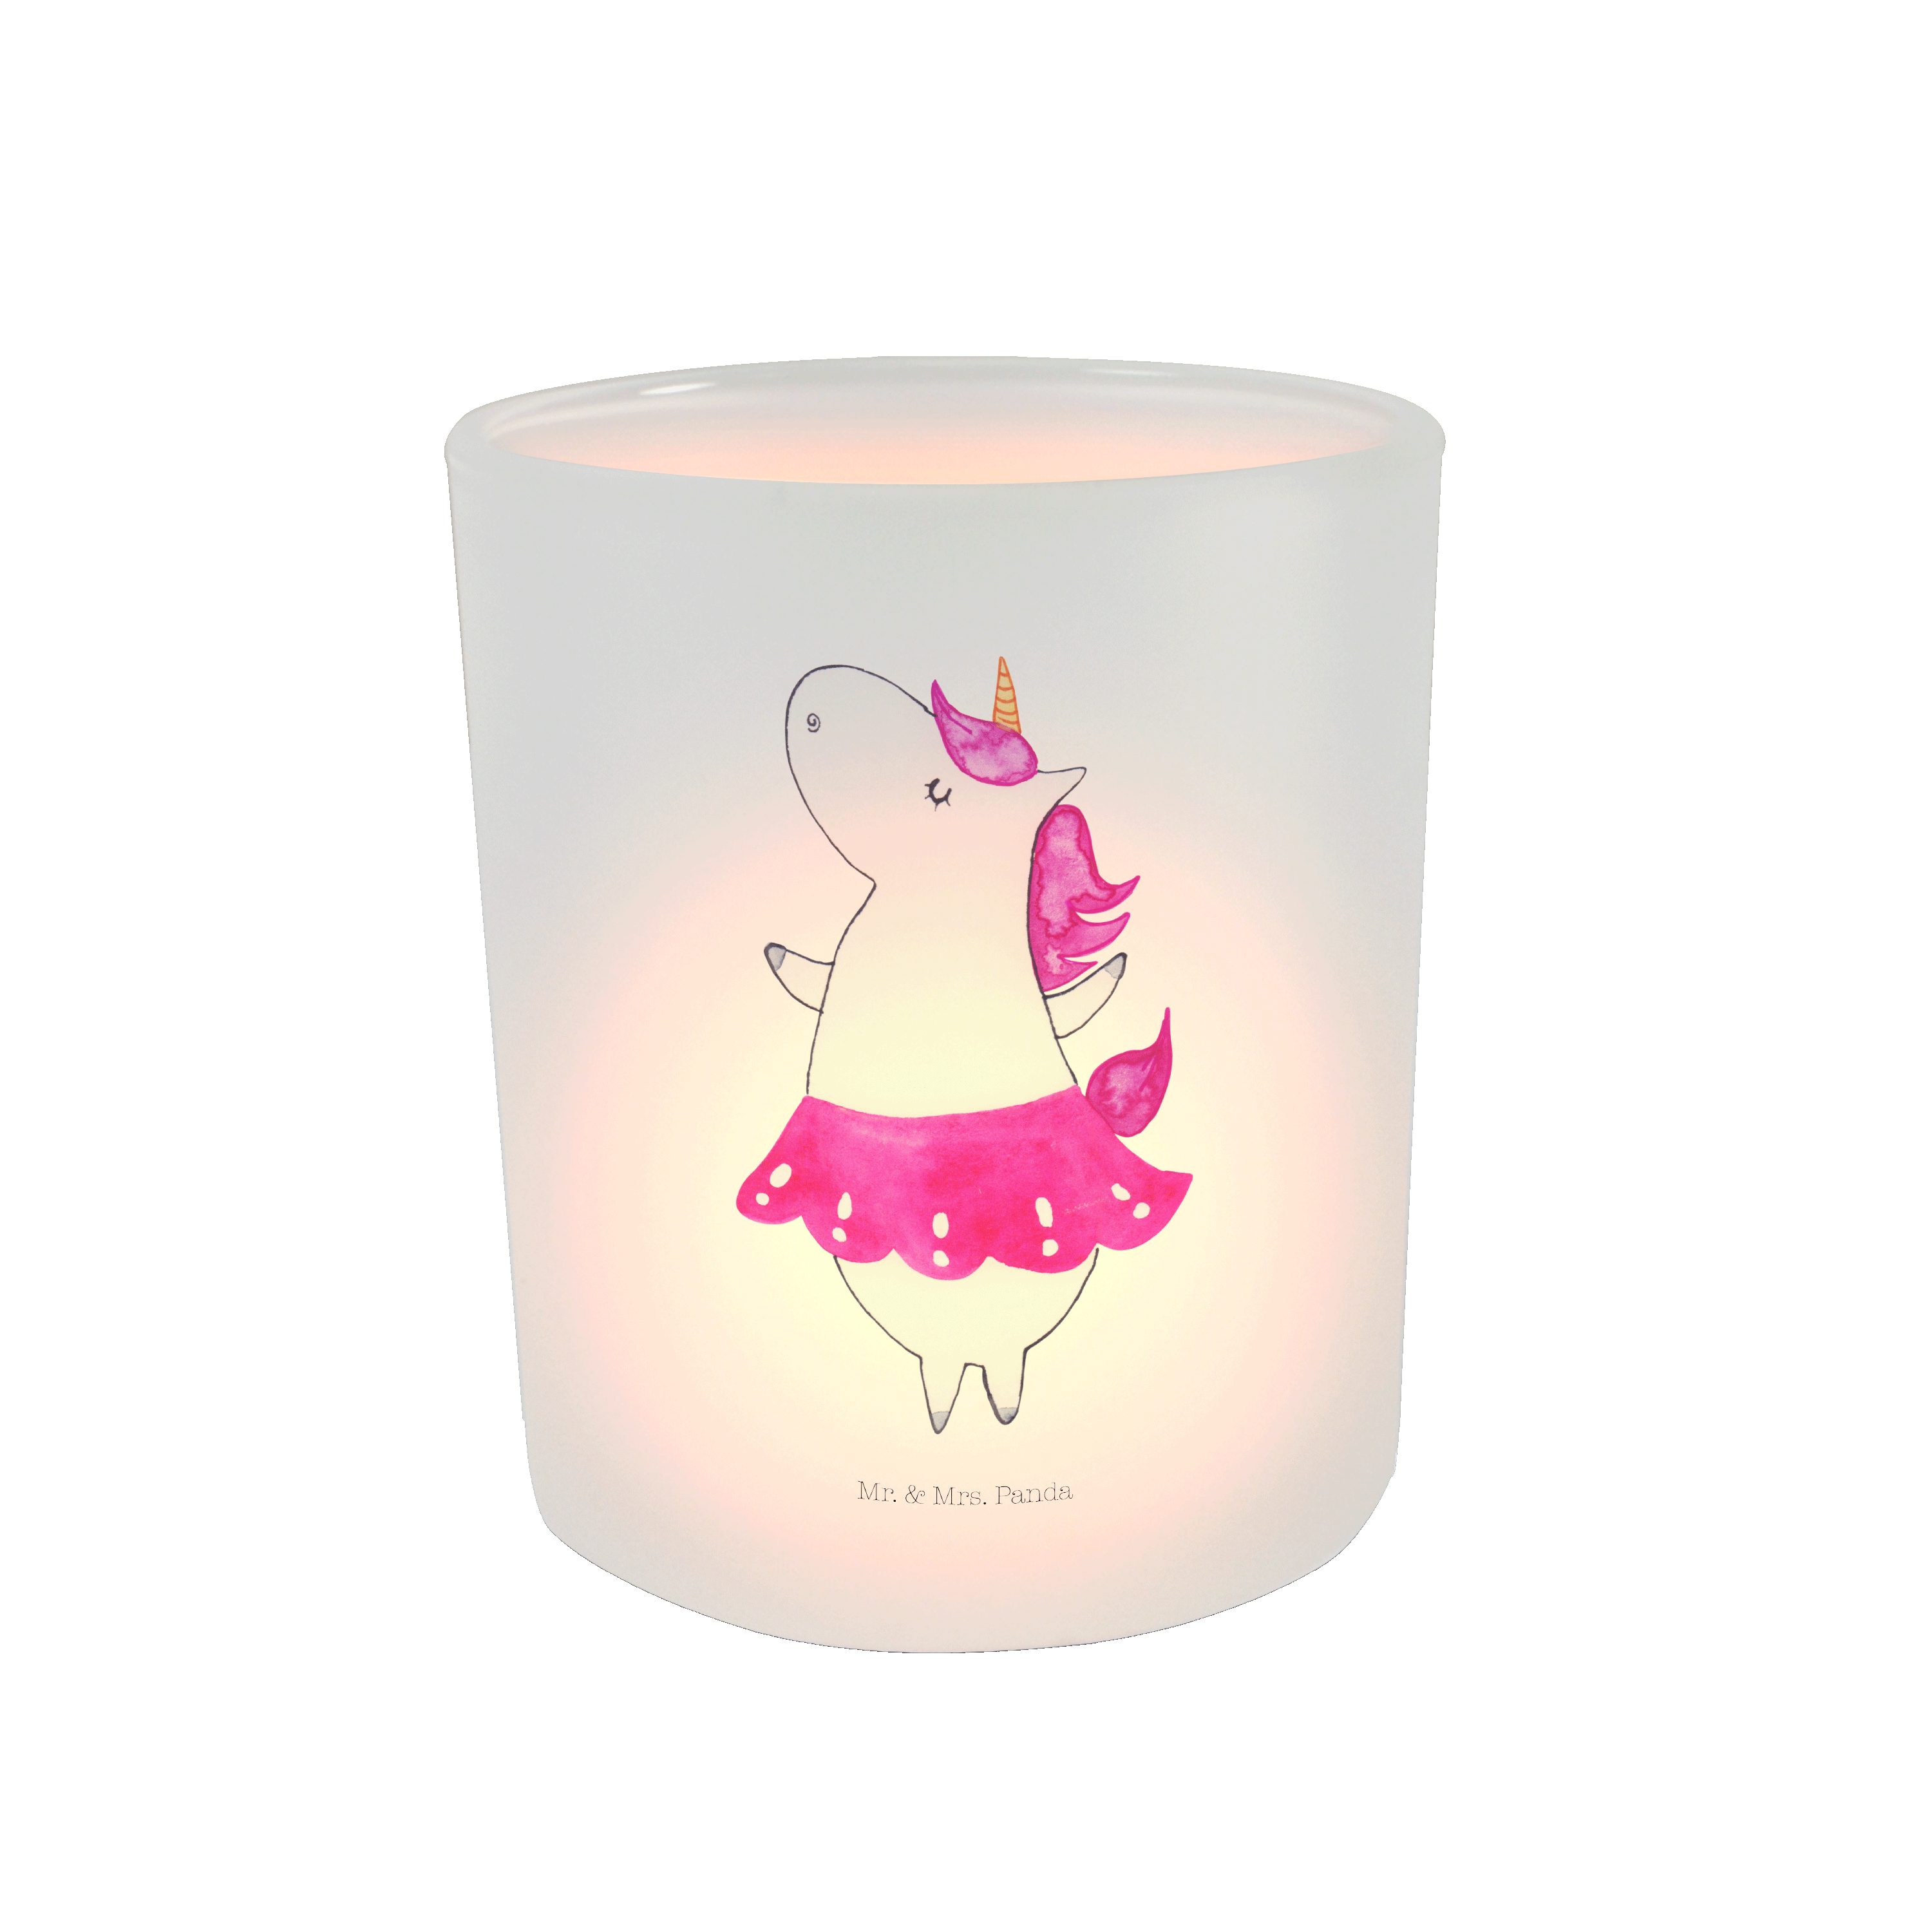 Panda (1 Windlicht - & Windlicht Mrs. Ballerina Mr. Geschenk, K Teelichtglas, St) - Einhorn Transparent